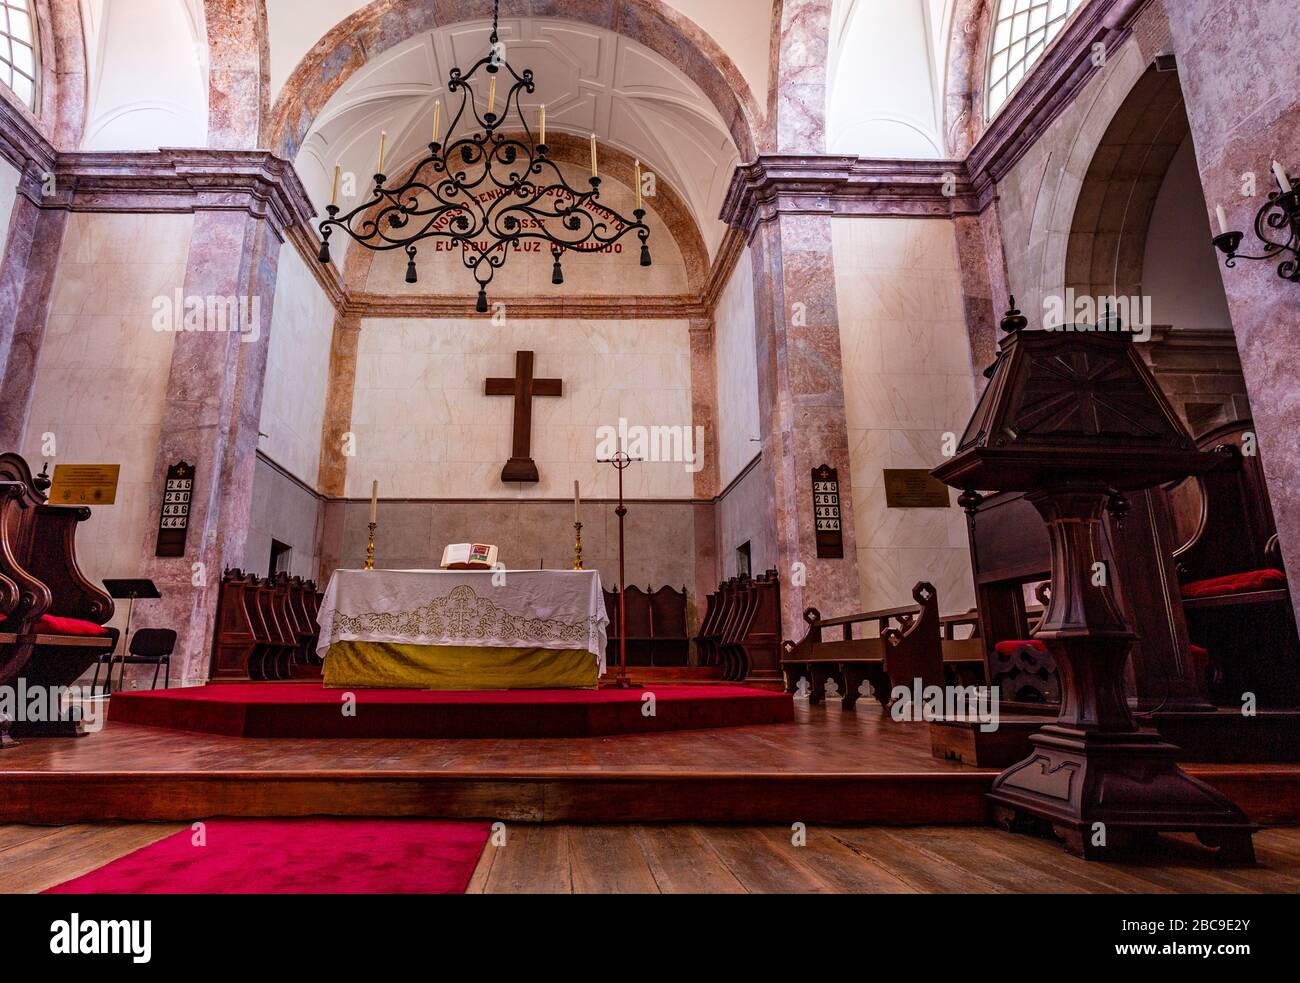 Particolare dell'altare maggiore nella Cattedrale di San Paolo, sede della Chiesa lusitana (comunione anglicana in Portogallo), Lisbona, Portogallo Foto Stock